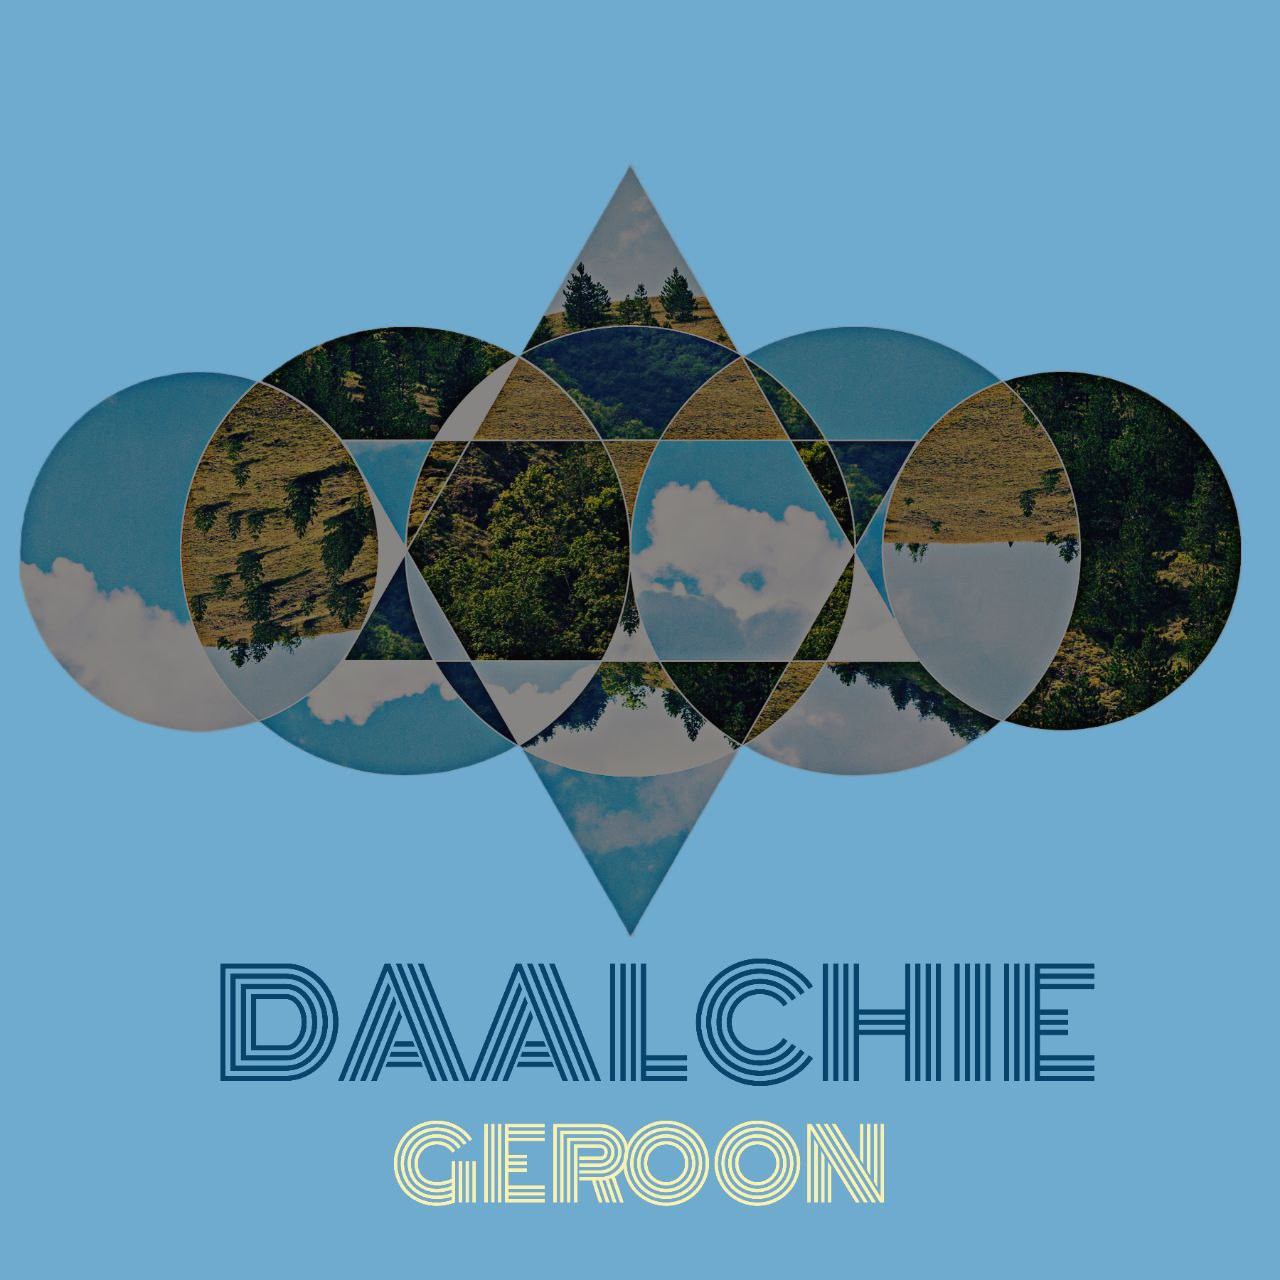 Dalchie - Geroon